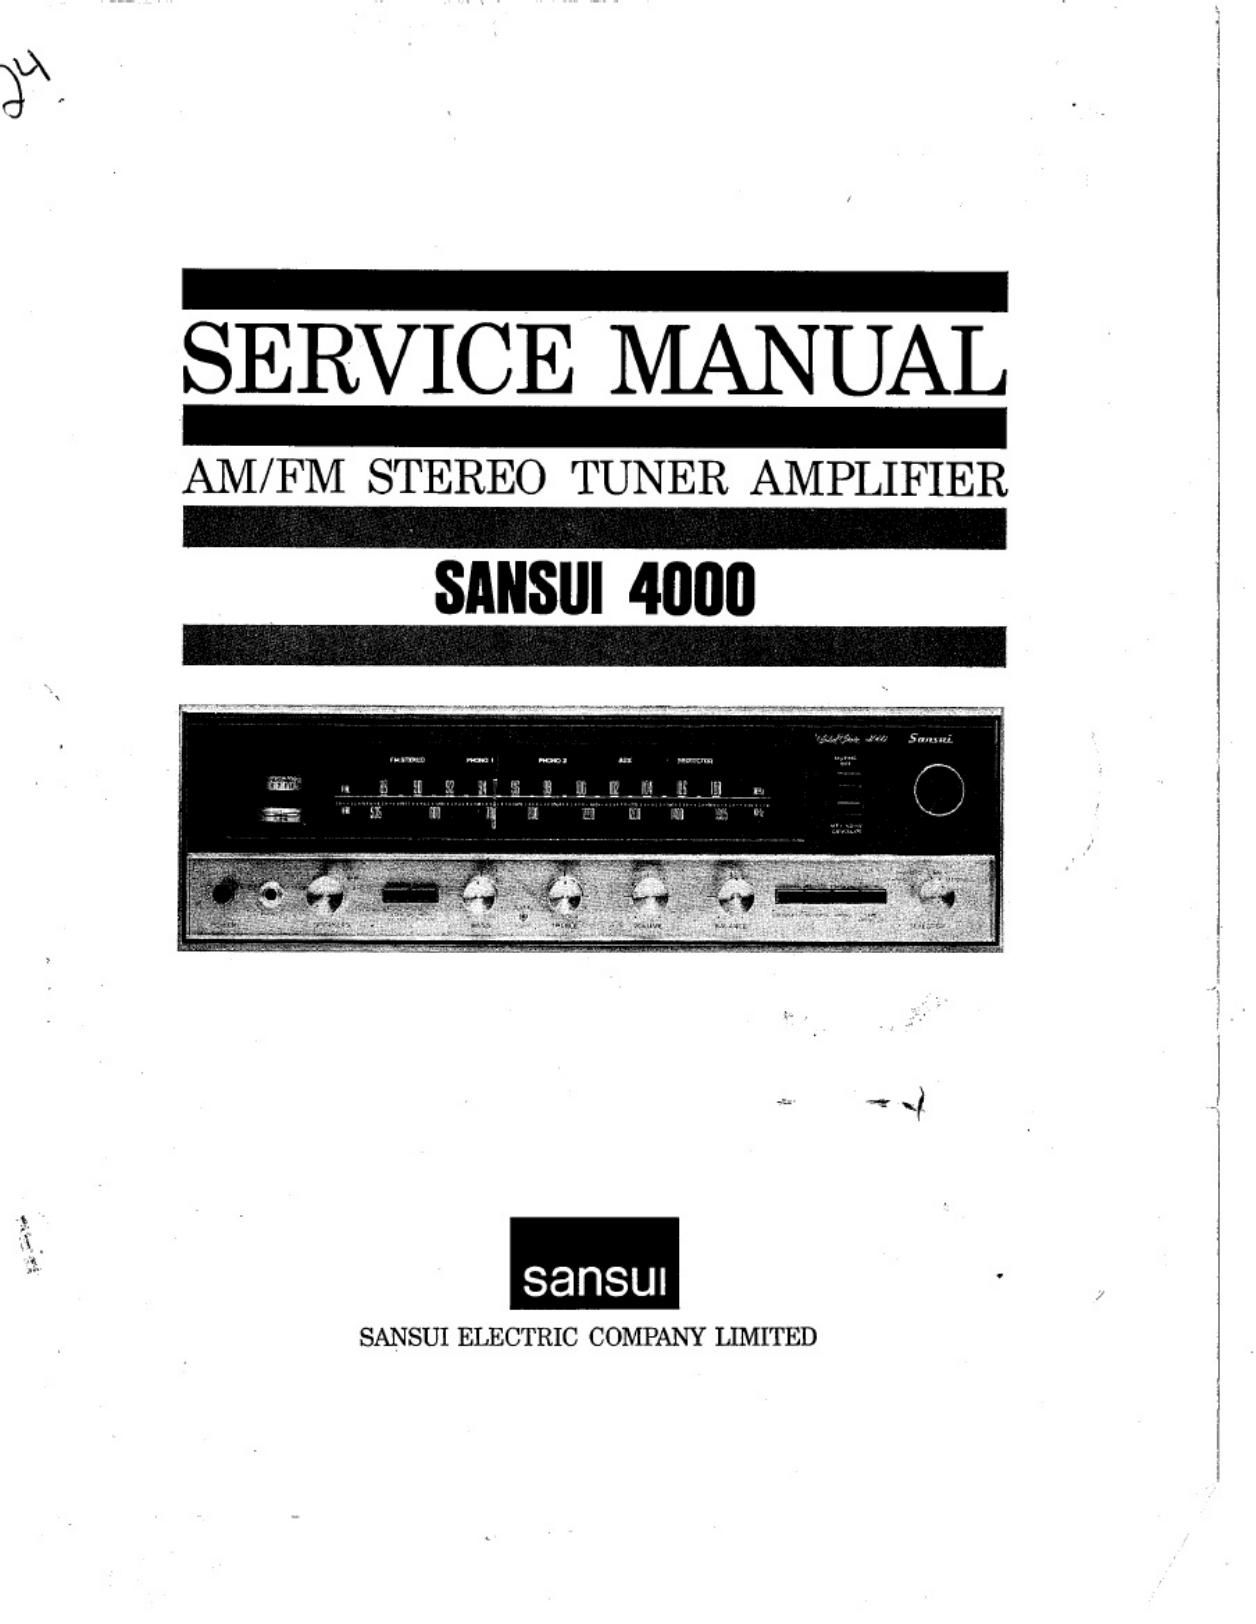 Sansui 4000 Service Manual